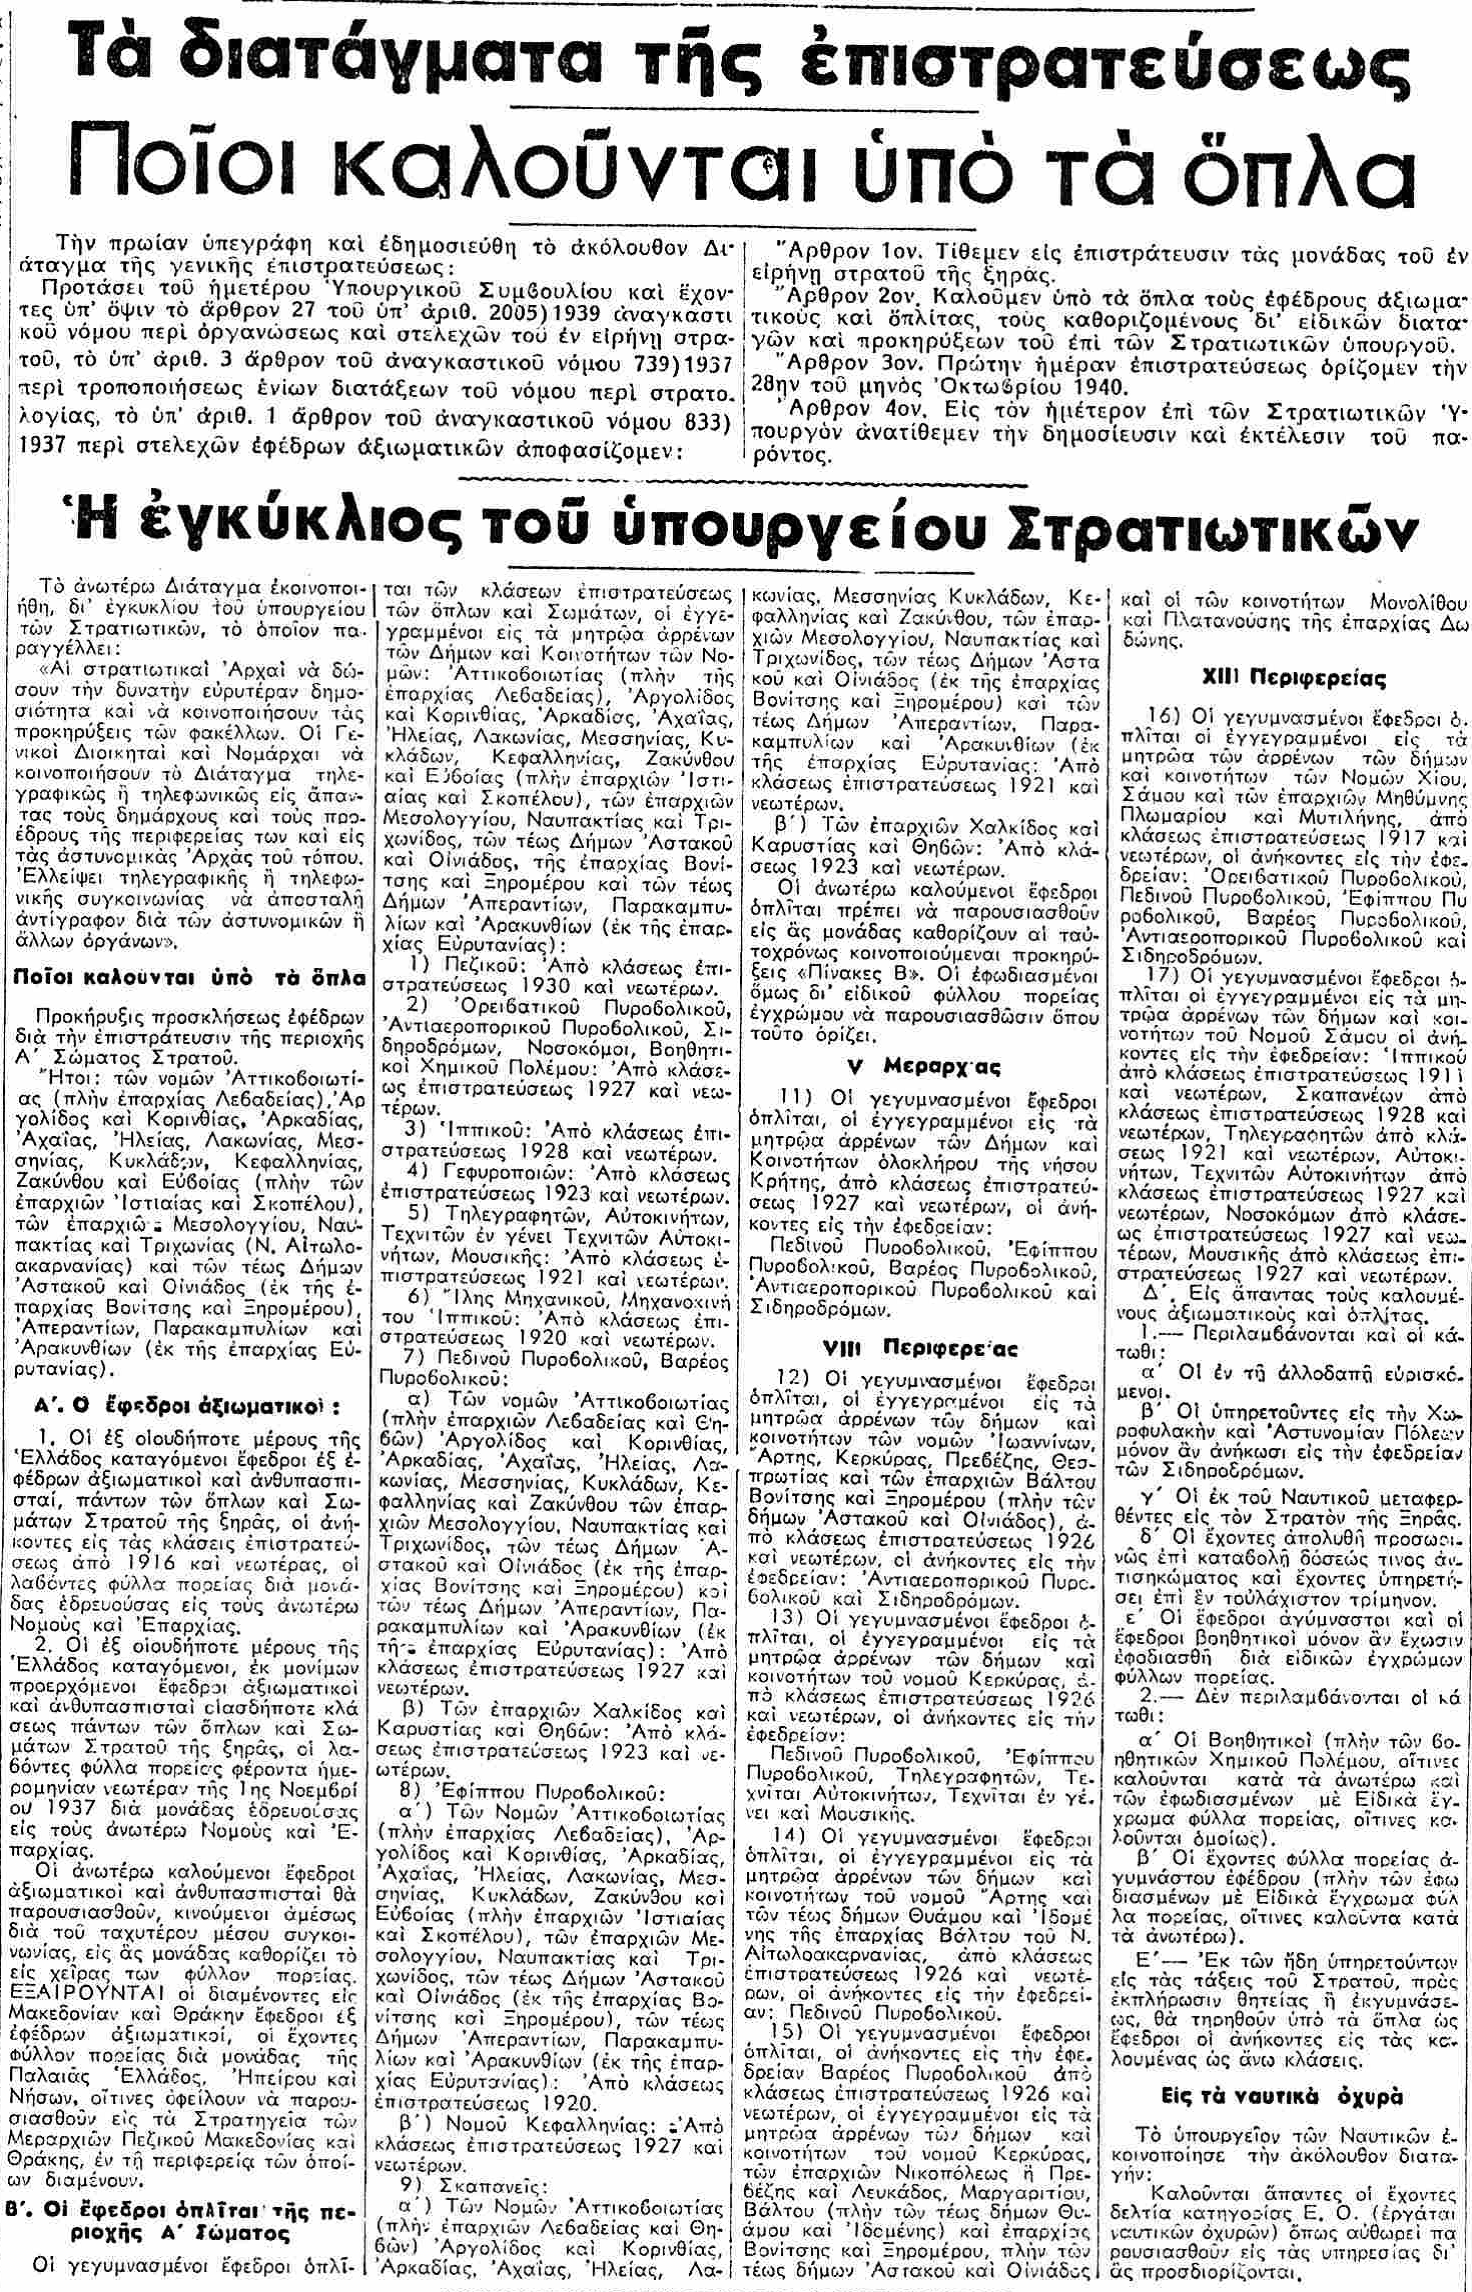 ΝΕΑ ΕΛΛΑΣ - 29-10-1940.png